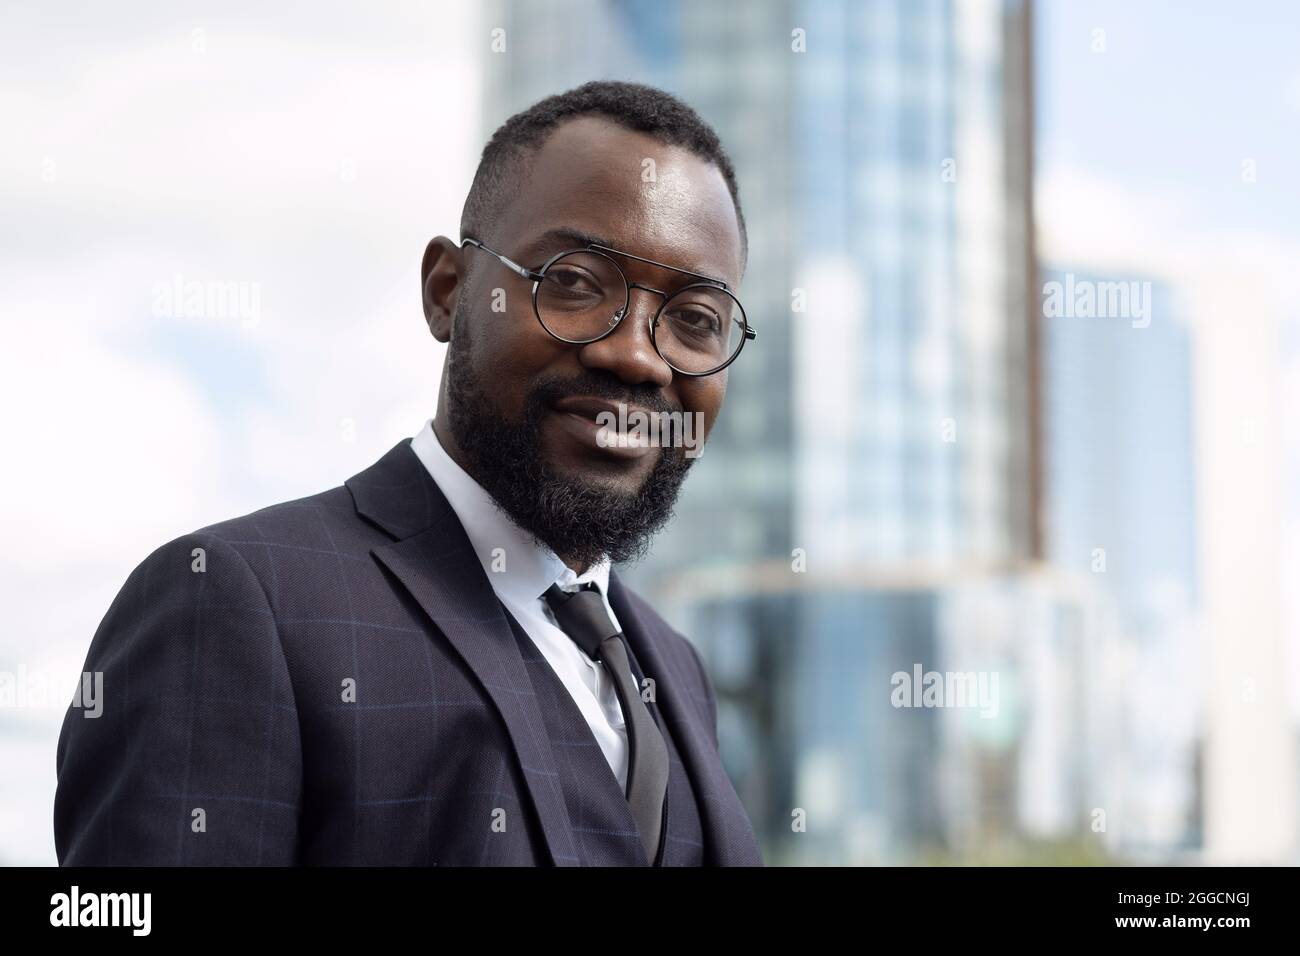 Felice giovane uomo d'affari africano in abbigliamento formale e occhiali guardando la macchina fotografica in ambiente urbano Foto Stock